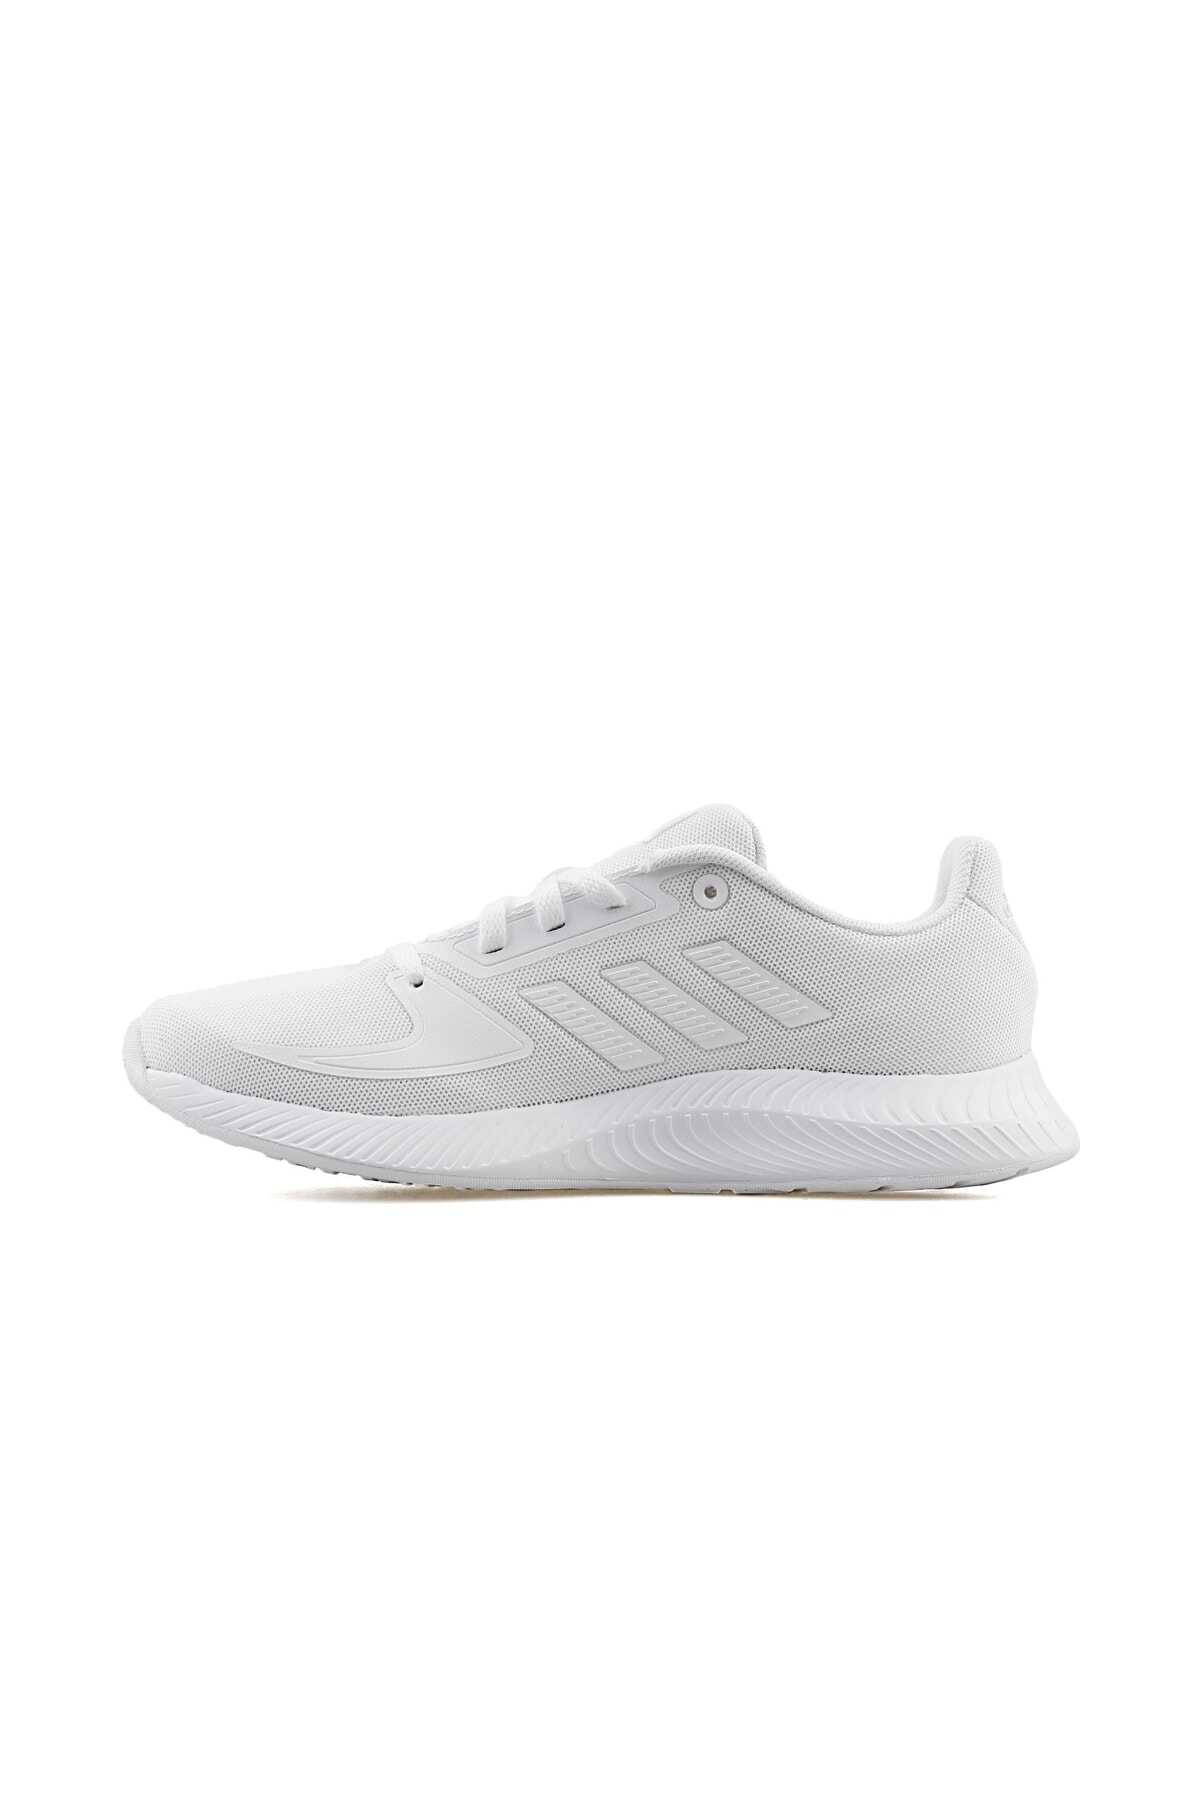 کفش ورزشی زنانه سفید کد Fy9496 برند adidas 